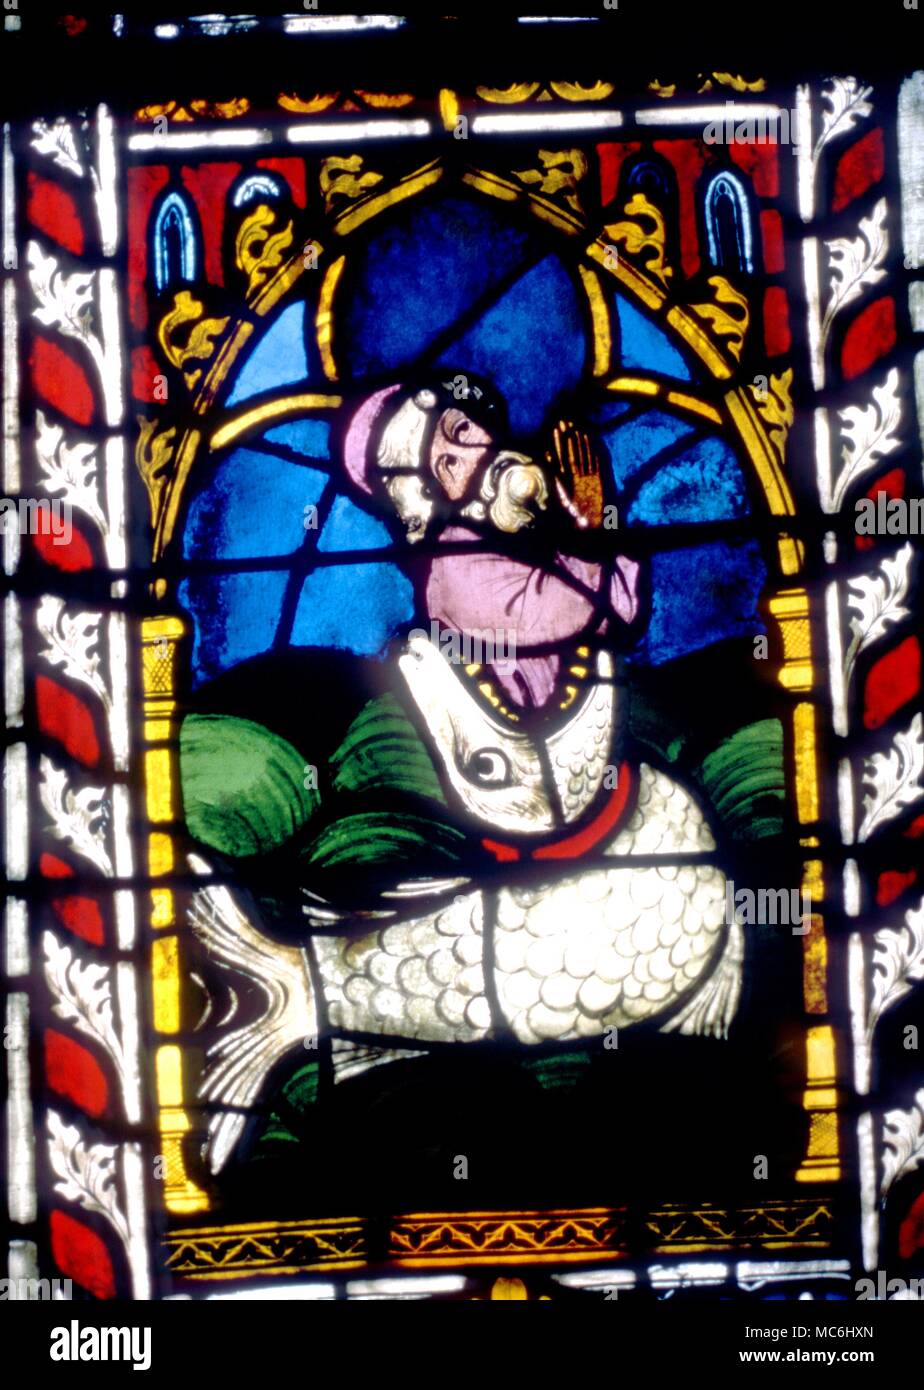 Fisch schlucken ein Mann, eine symbolische Bild über die Einleitung; einer beiing, die in zwei Welten gleichzeitig leben können. Kirchenfenster von St. Etienne, Mulhouse. Stockfoto